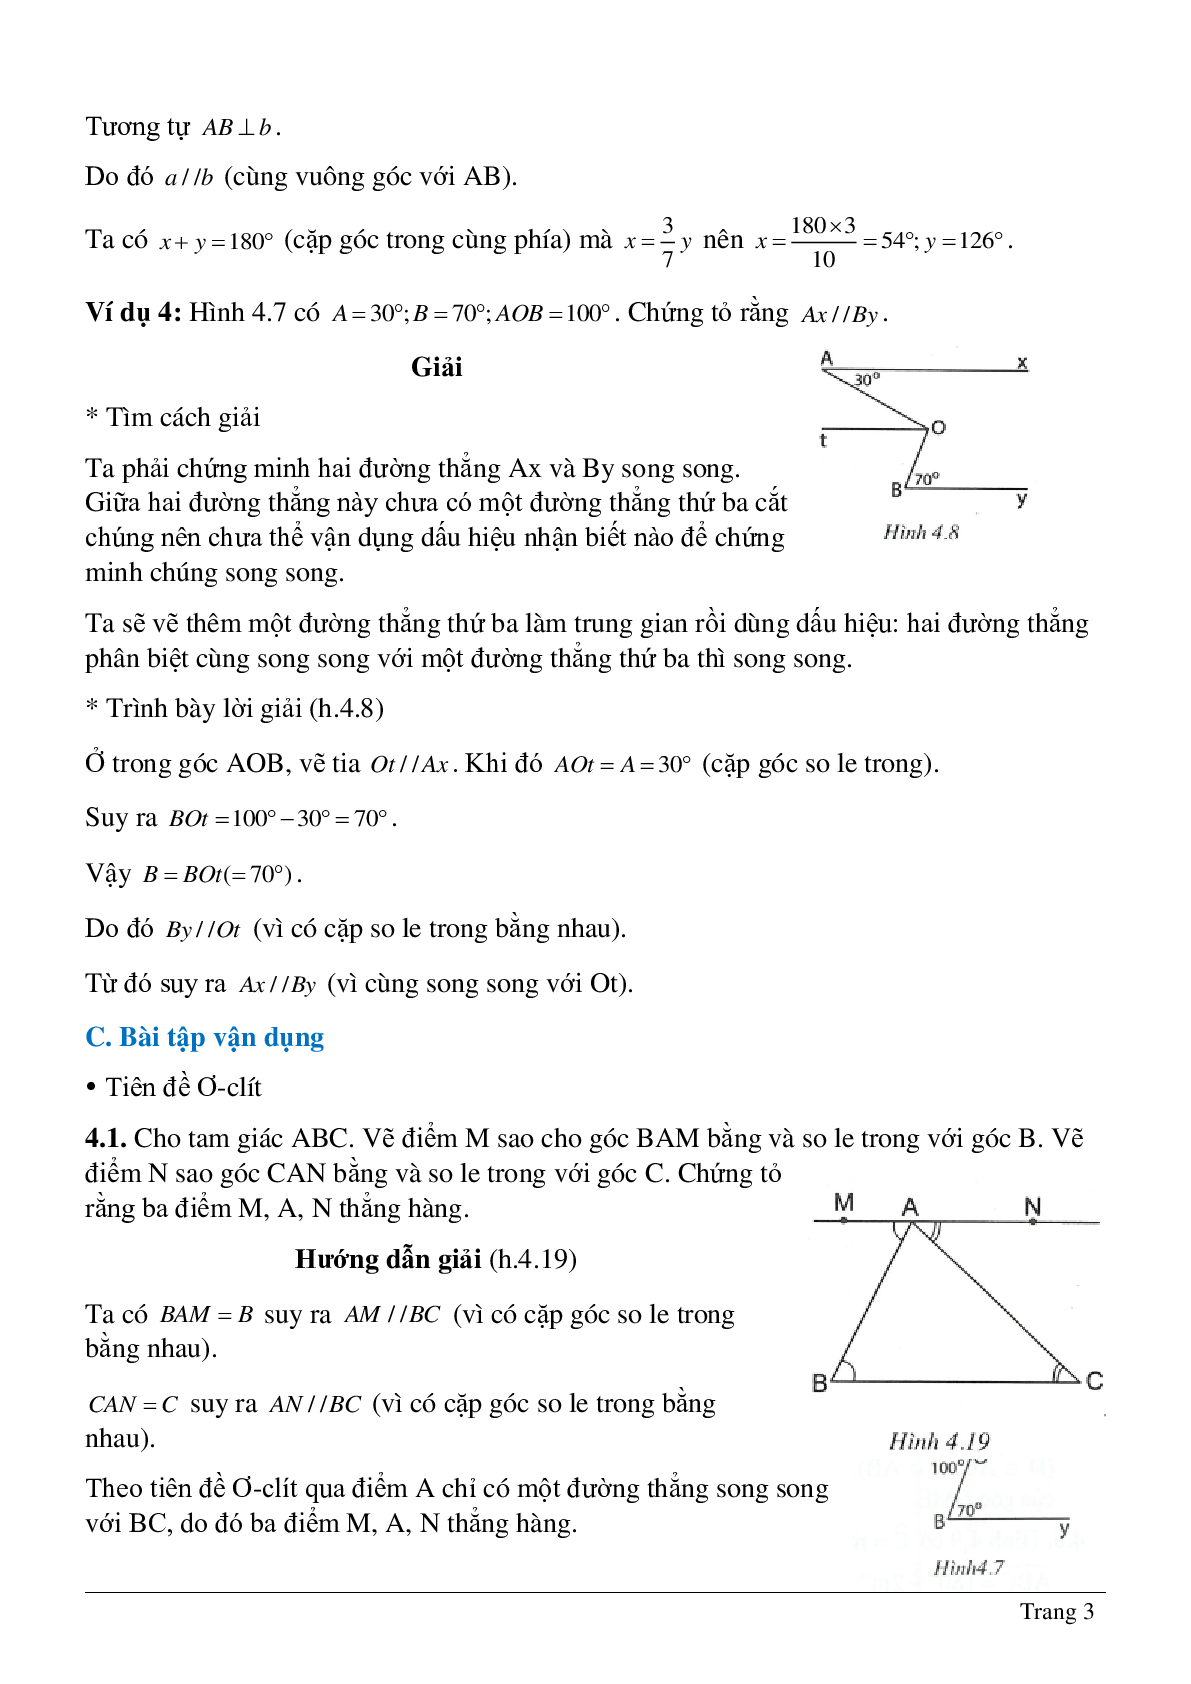 Phương pháp giải và bài tập về Tiên đề Ơ-clit - Tính chất của hai đường thẳng song song có lời giải (trang 3)